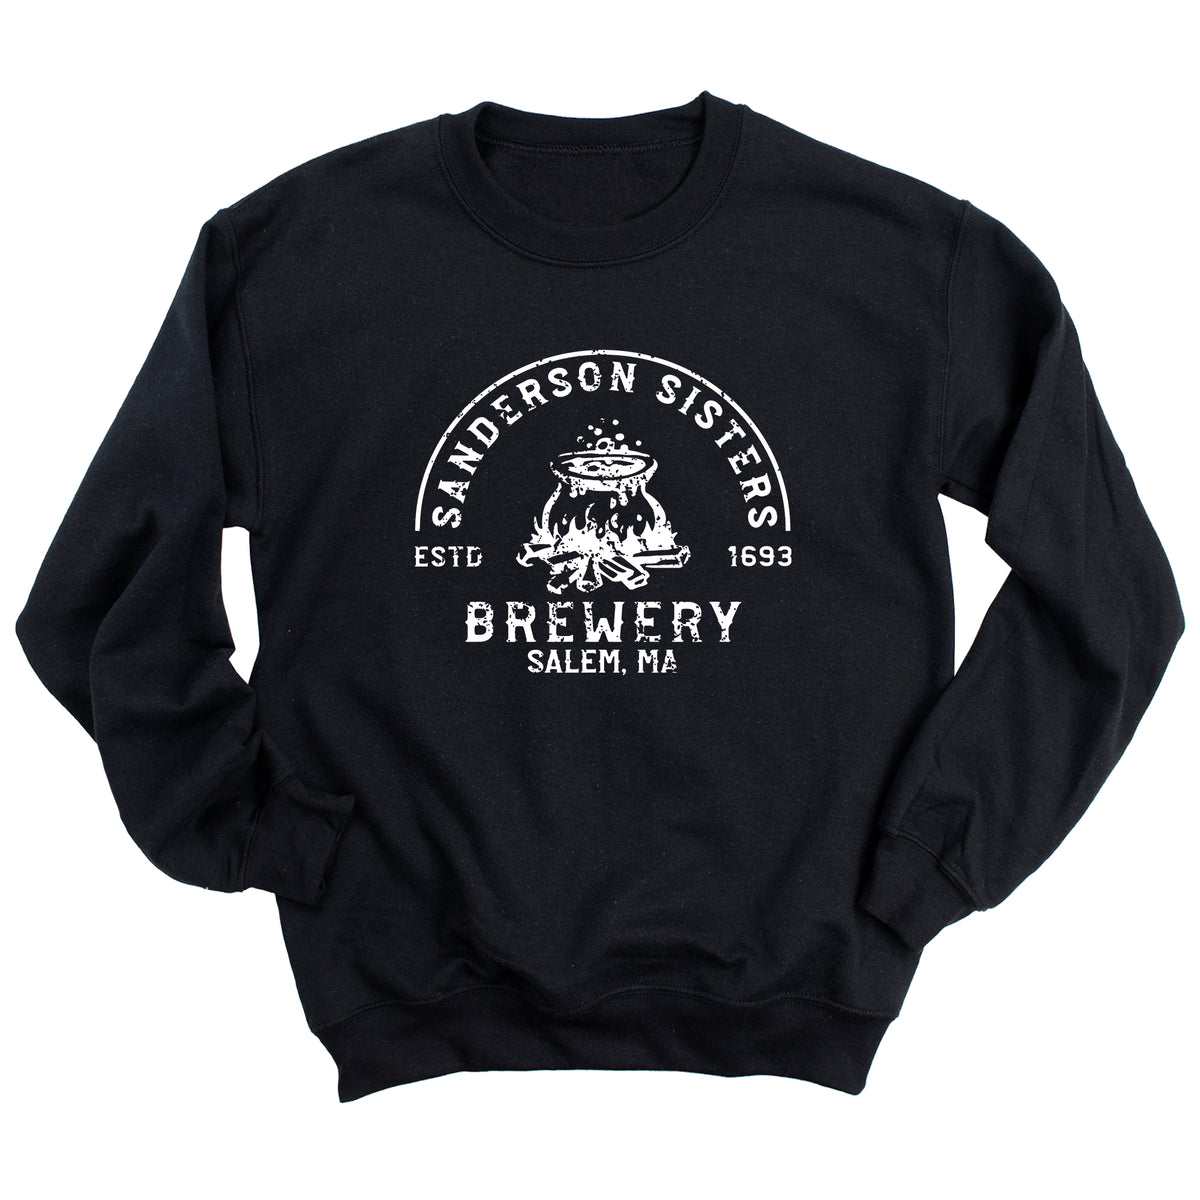 Sanderson Sisters Brewery Sweatshirt